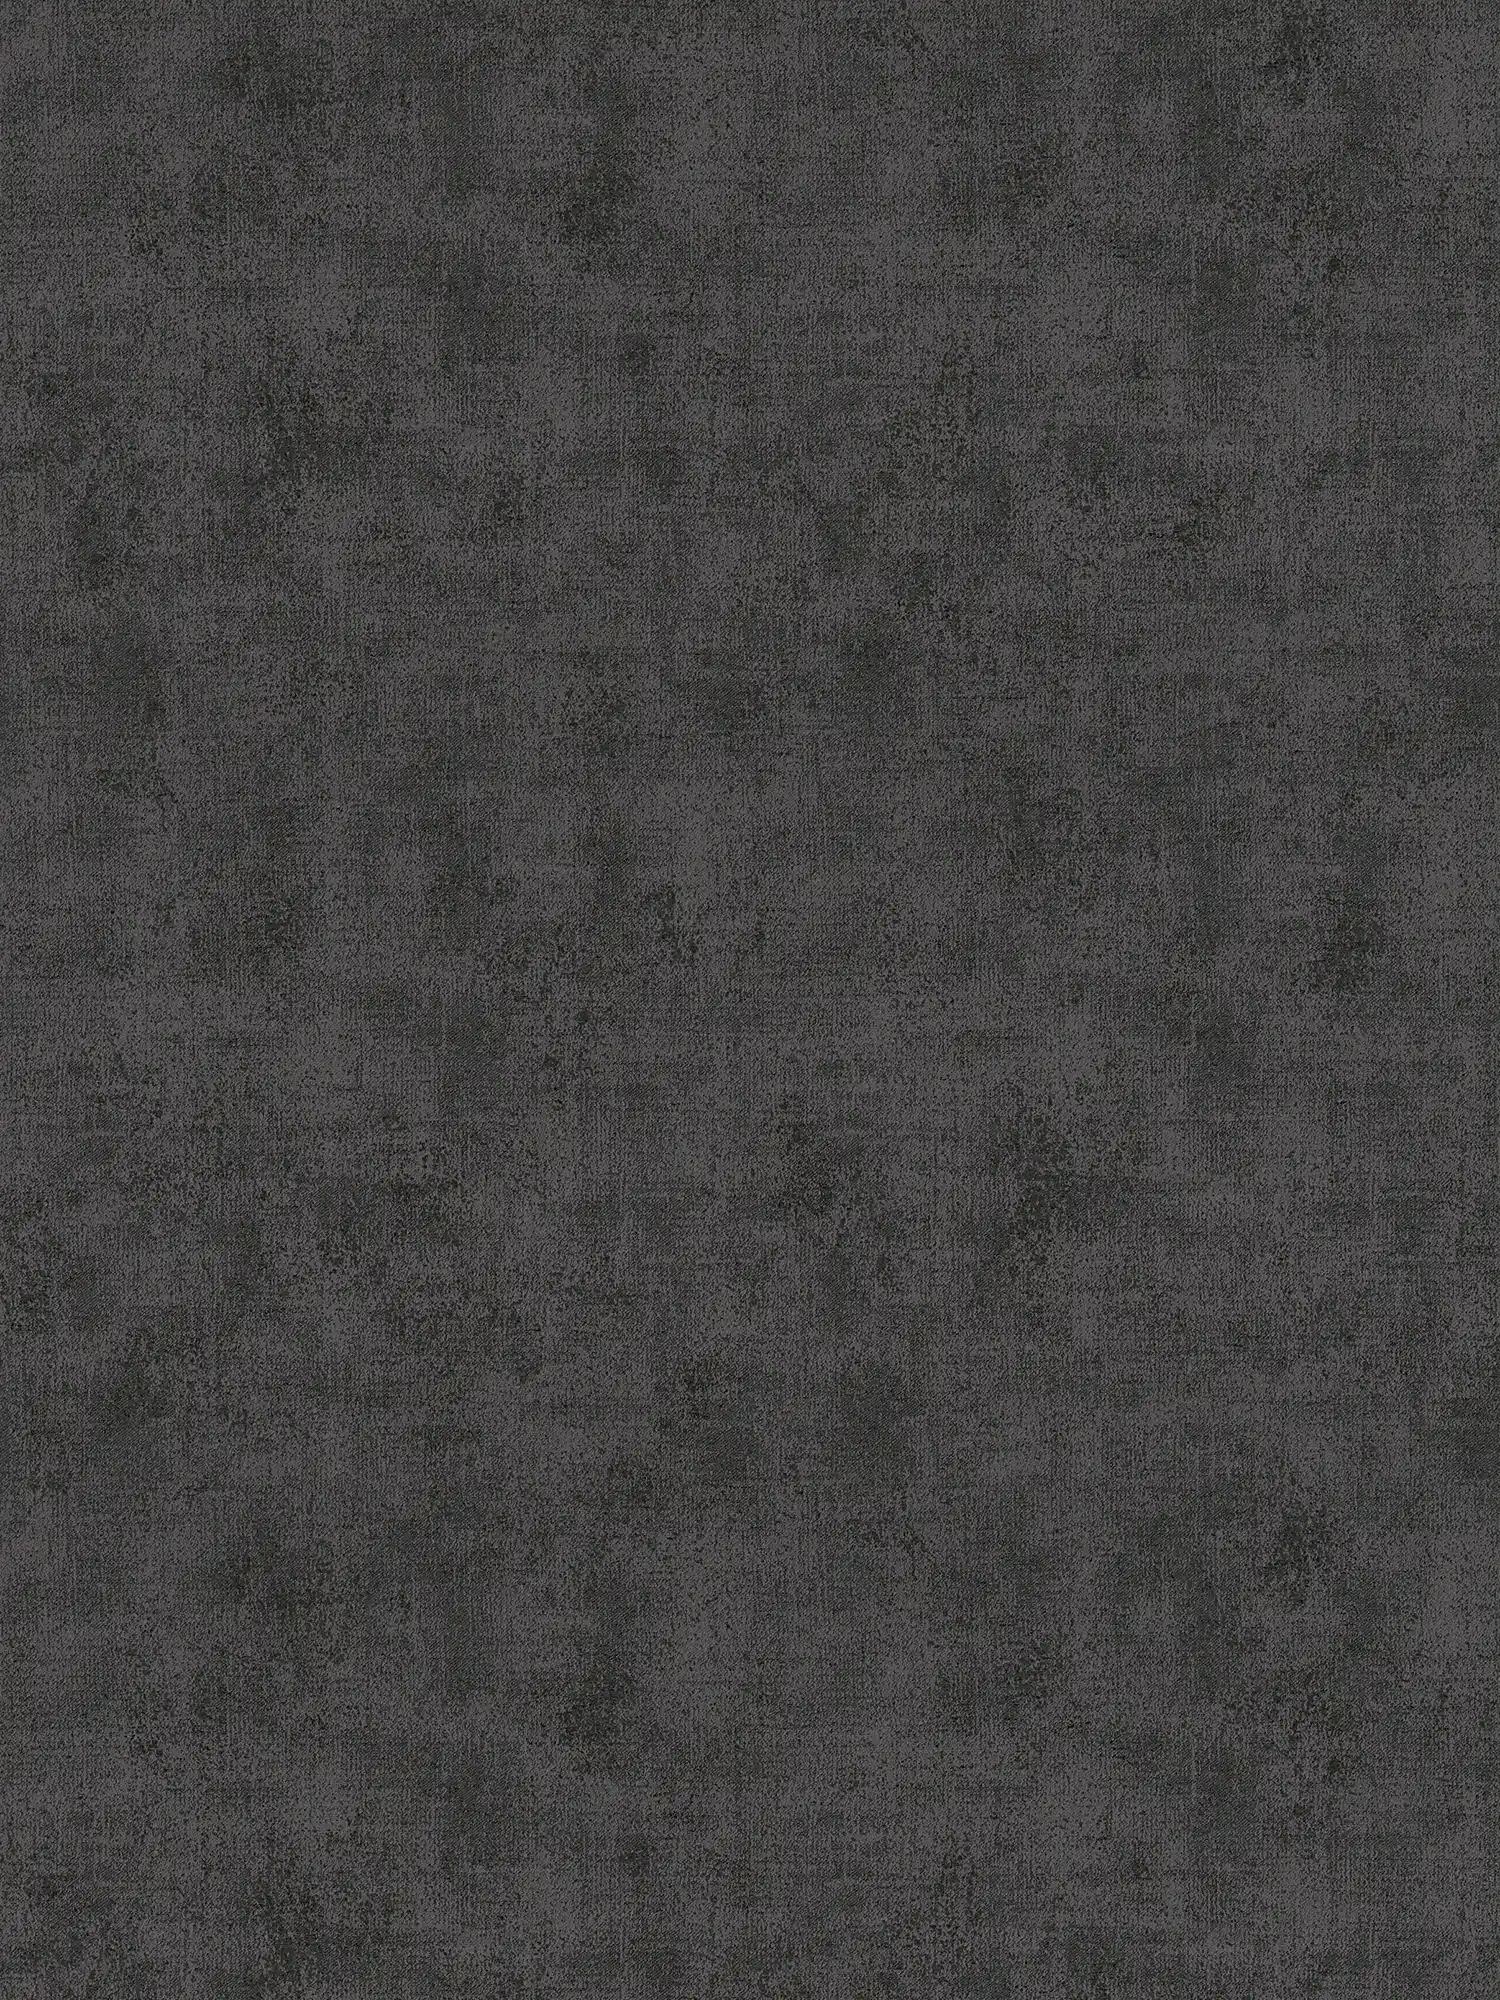 Effen behang met gevlekte structuur look - zwart
